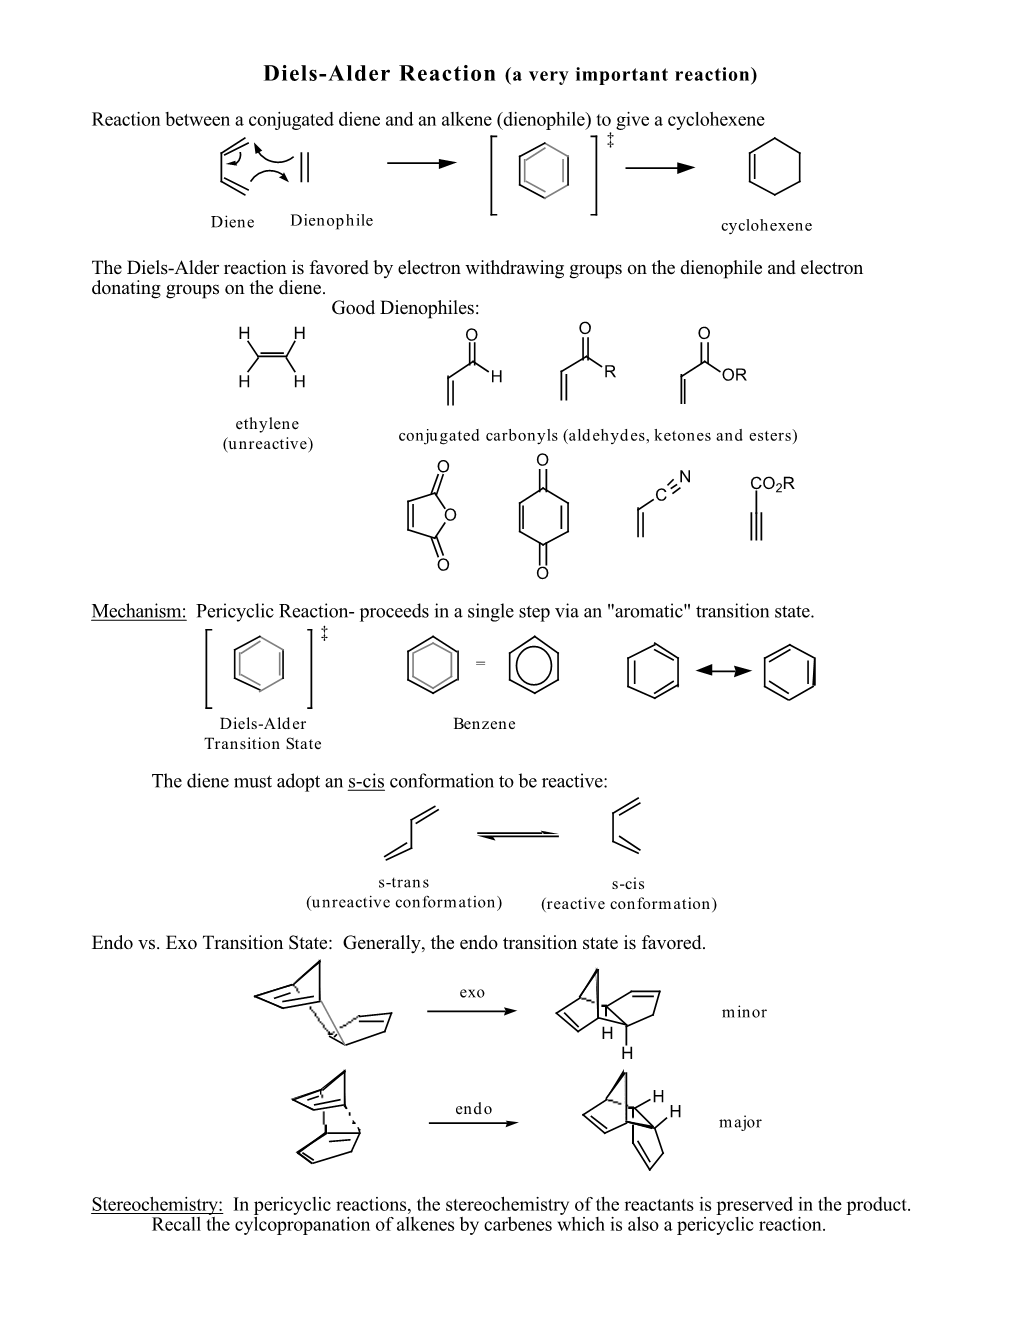 Diels-Alder Reaction (A Very Important Reaction)